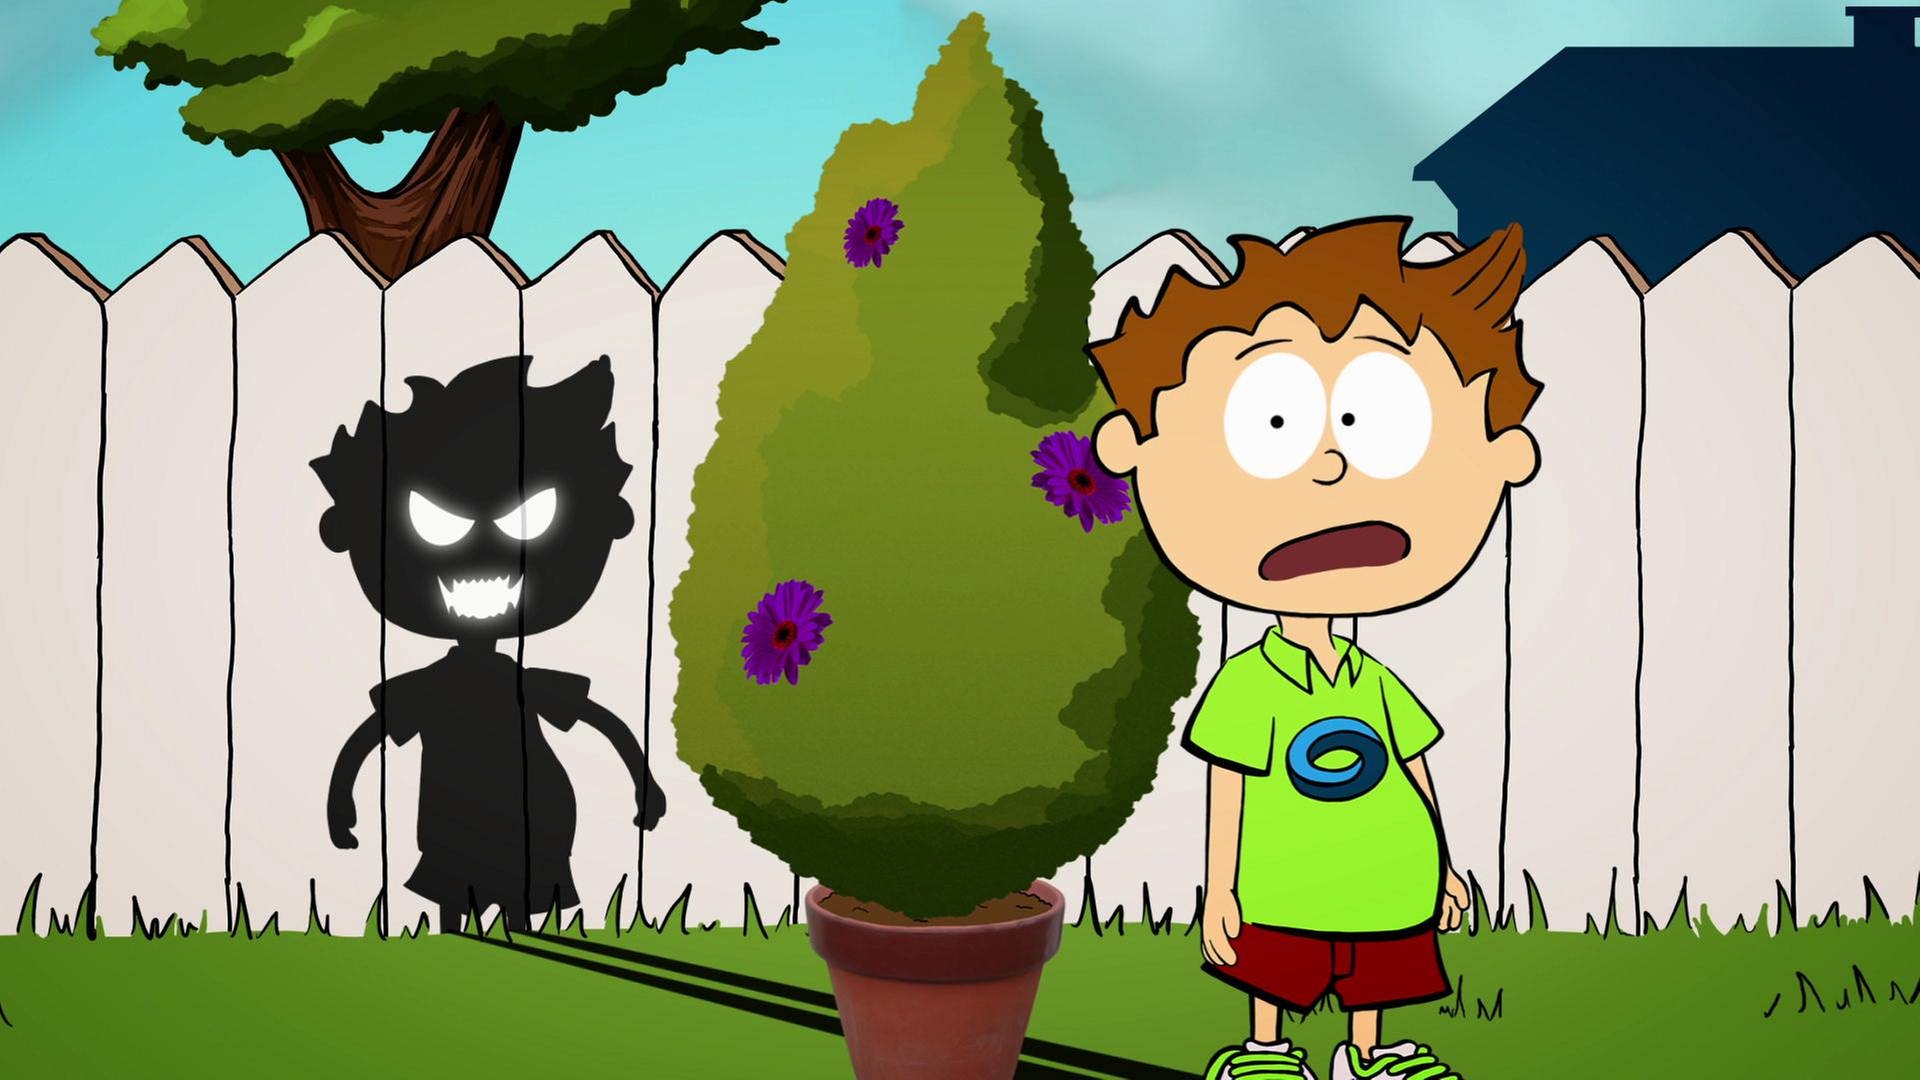 Der kleine Philosoph Knietzsche fürchtet sich von seinem grimmig schauenden Schatten, den er auf den Zaun wirft.